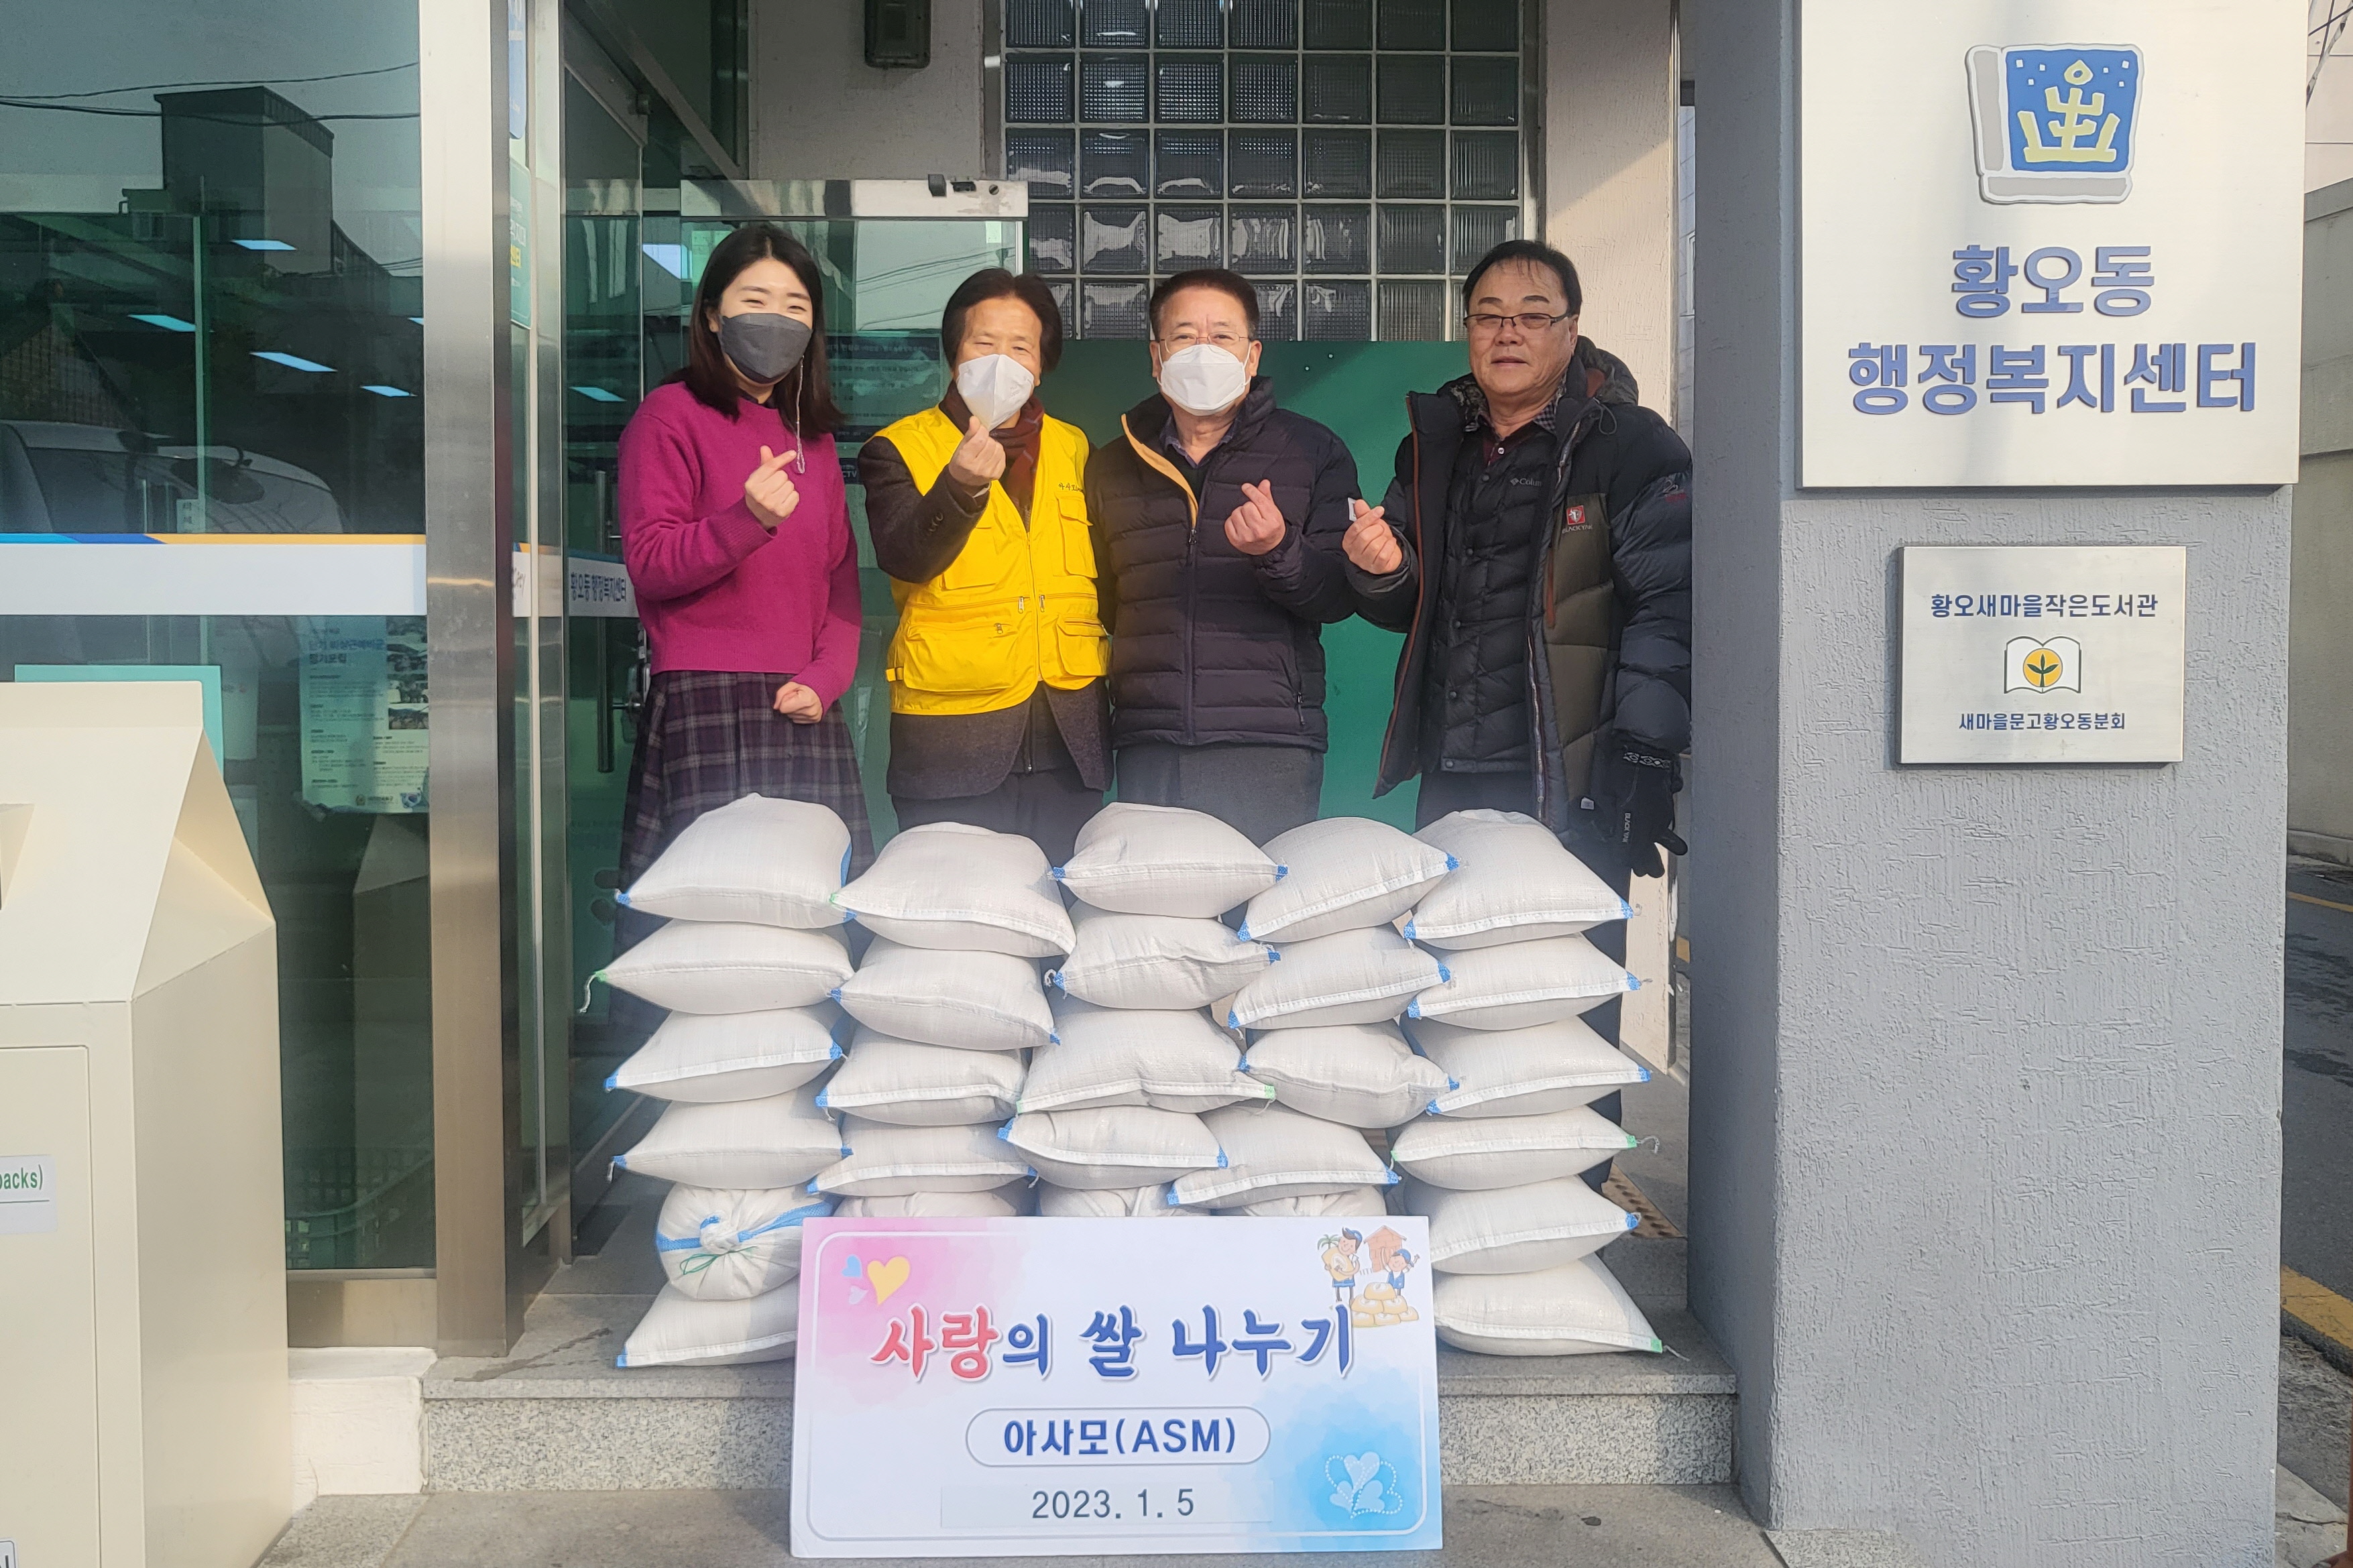 4. 아사모(아름다운 사람들의 모임), 경주시 황오동행정복지센터에 쌀 300㎏ 기탁하고 있는 모습